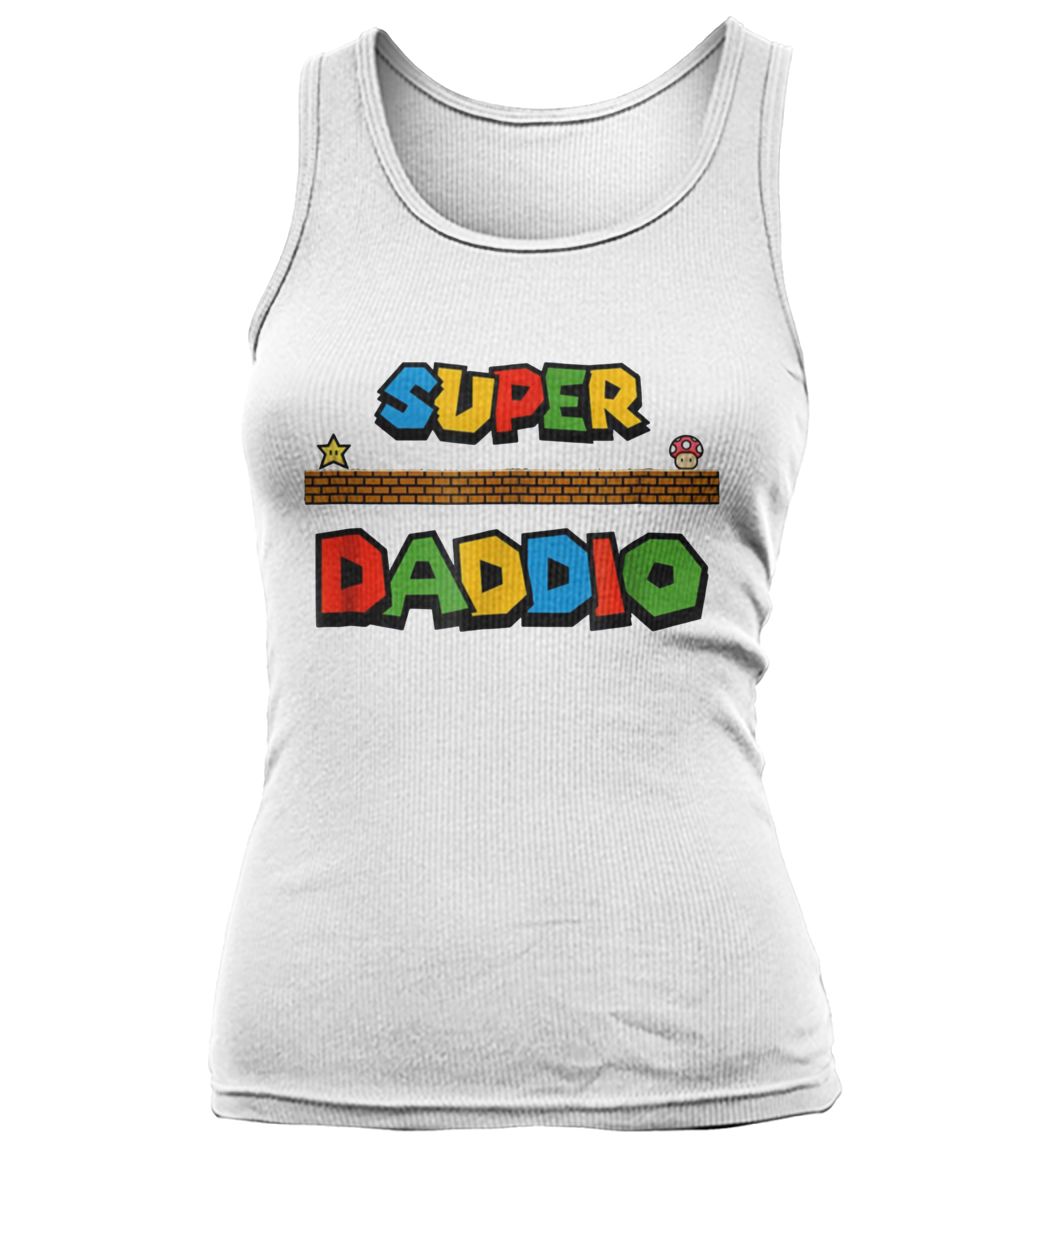 Super daddio mario dad women's tank top